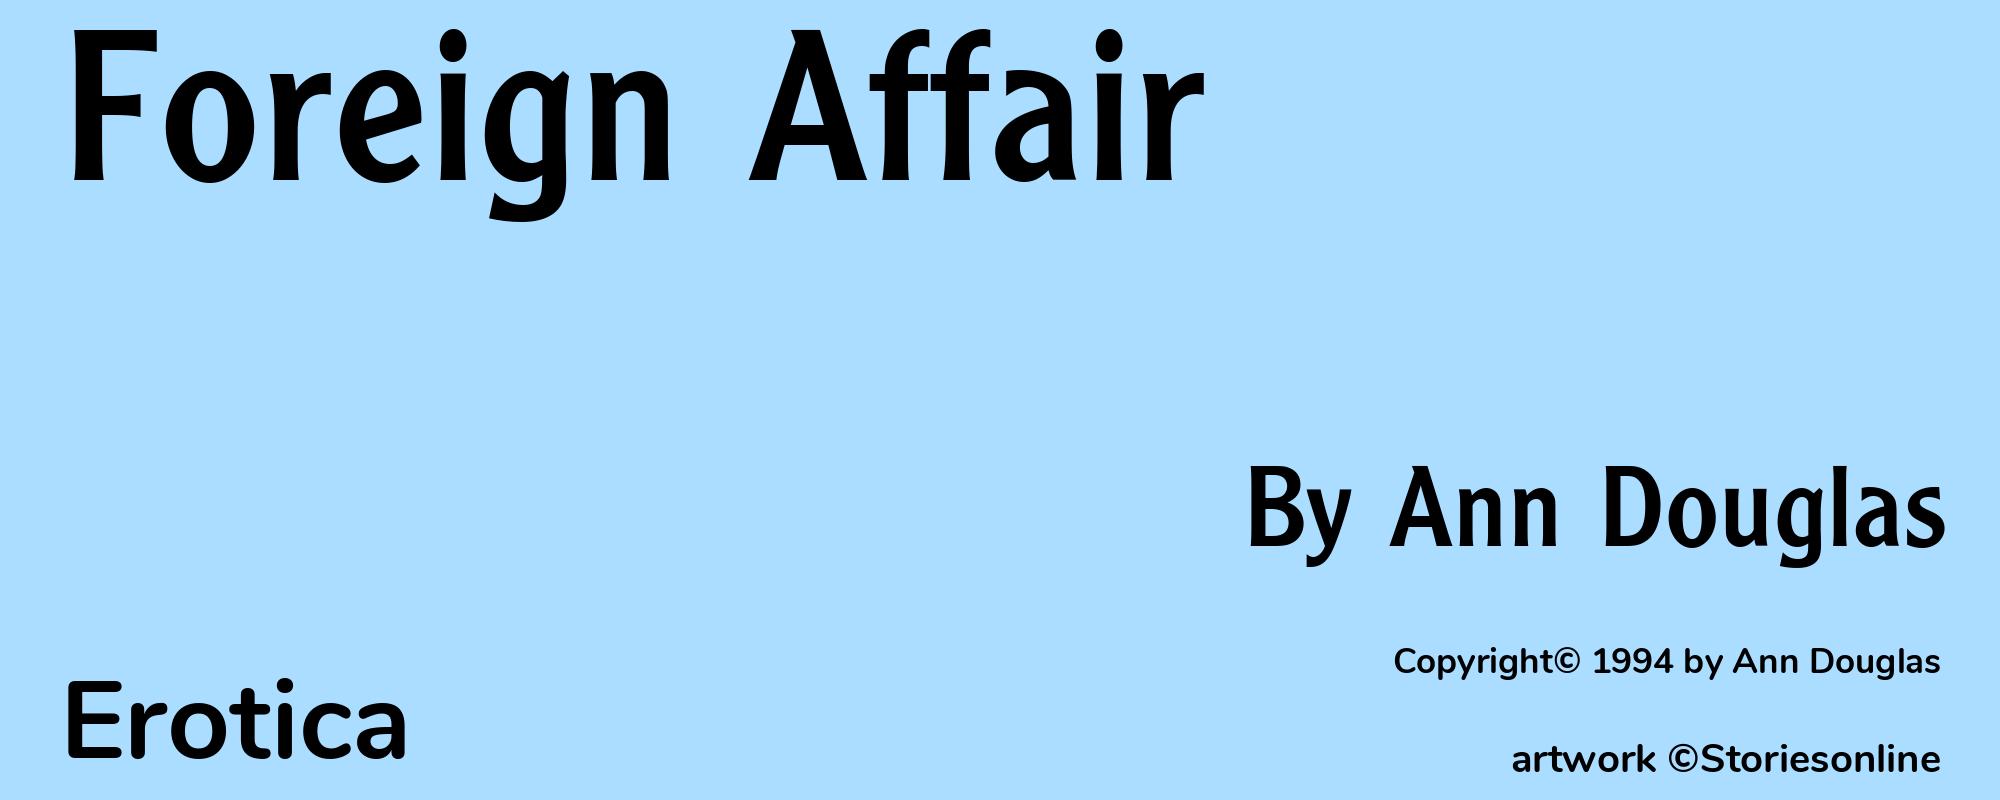 Foreign Affair - Cover